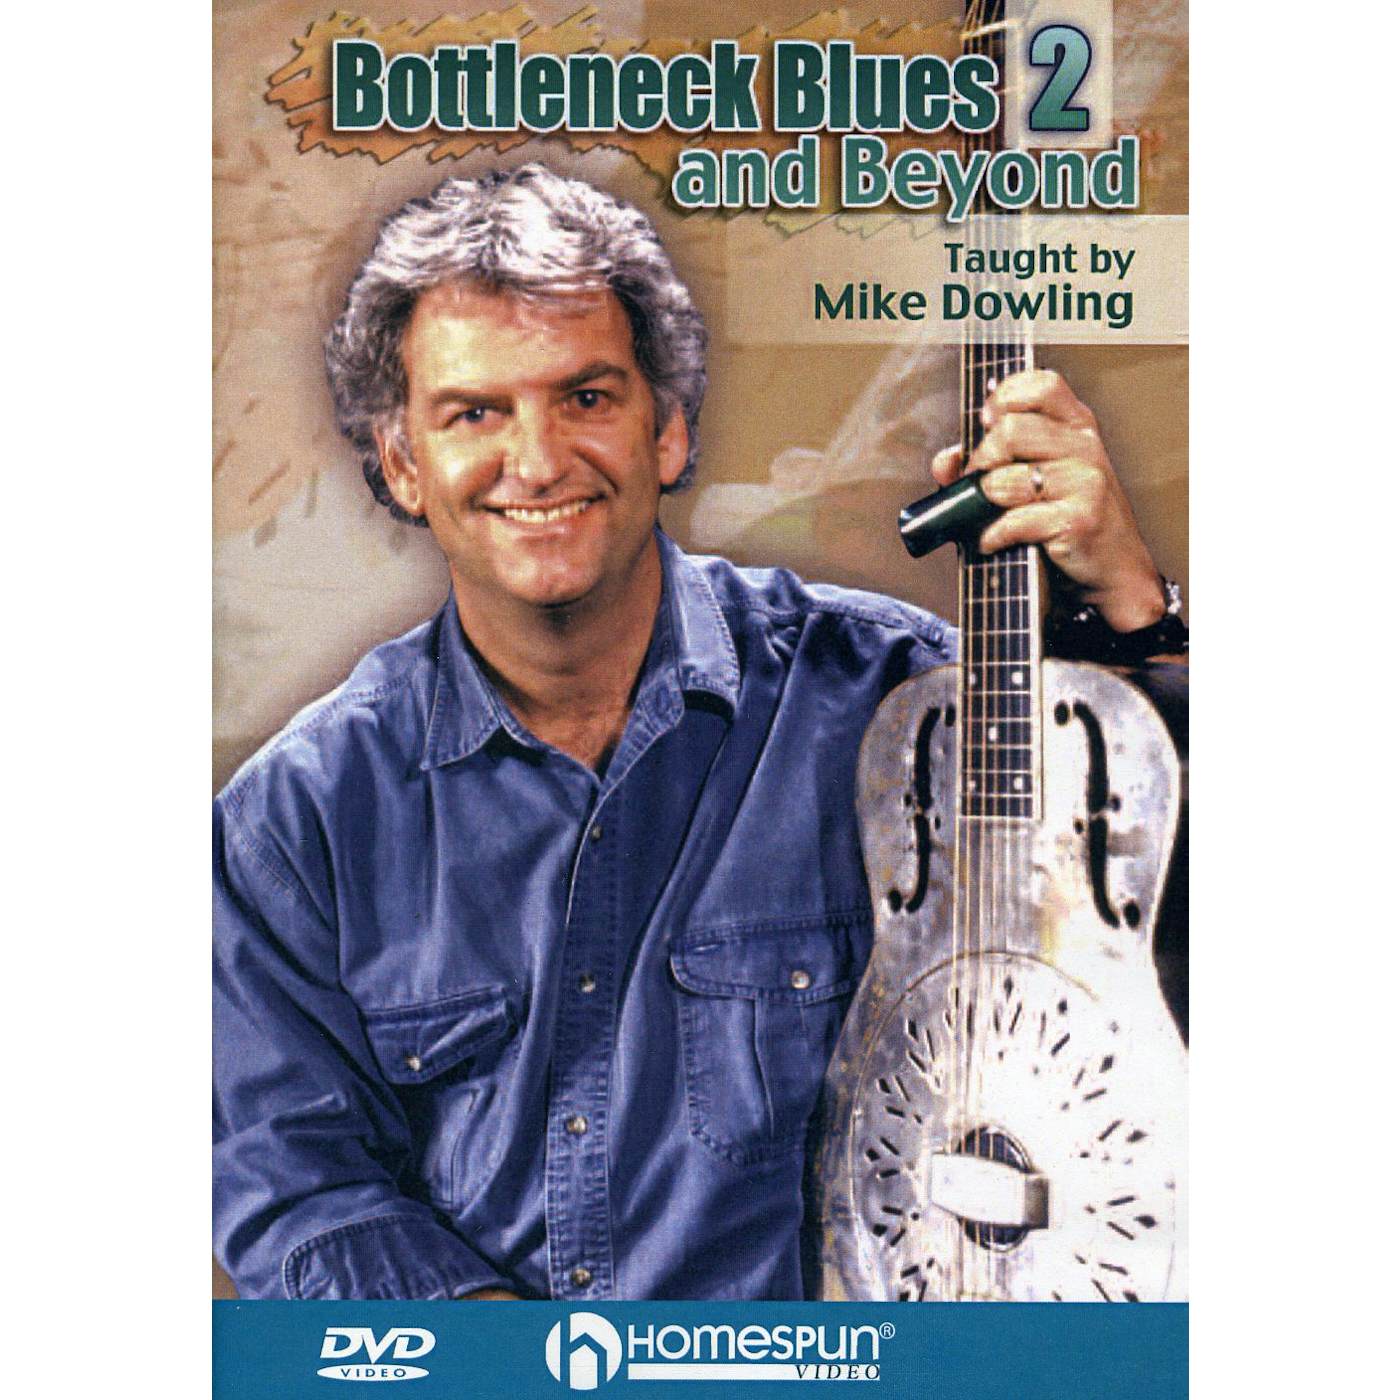 Mike Dowling BOTTLENECK BLUES & BEYOND 2 DVD